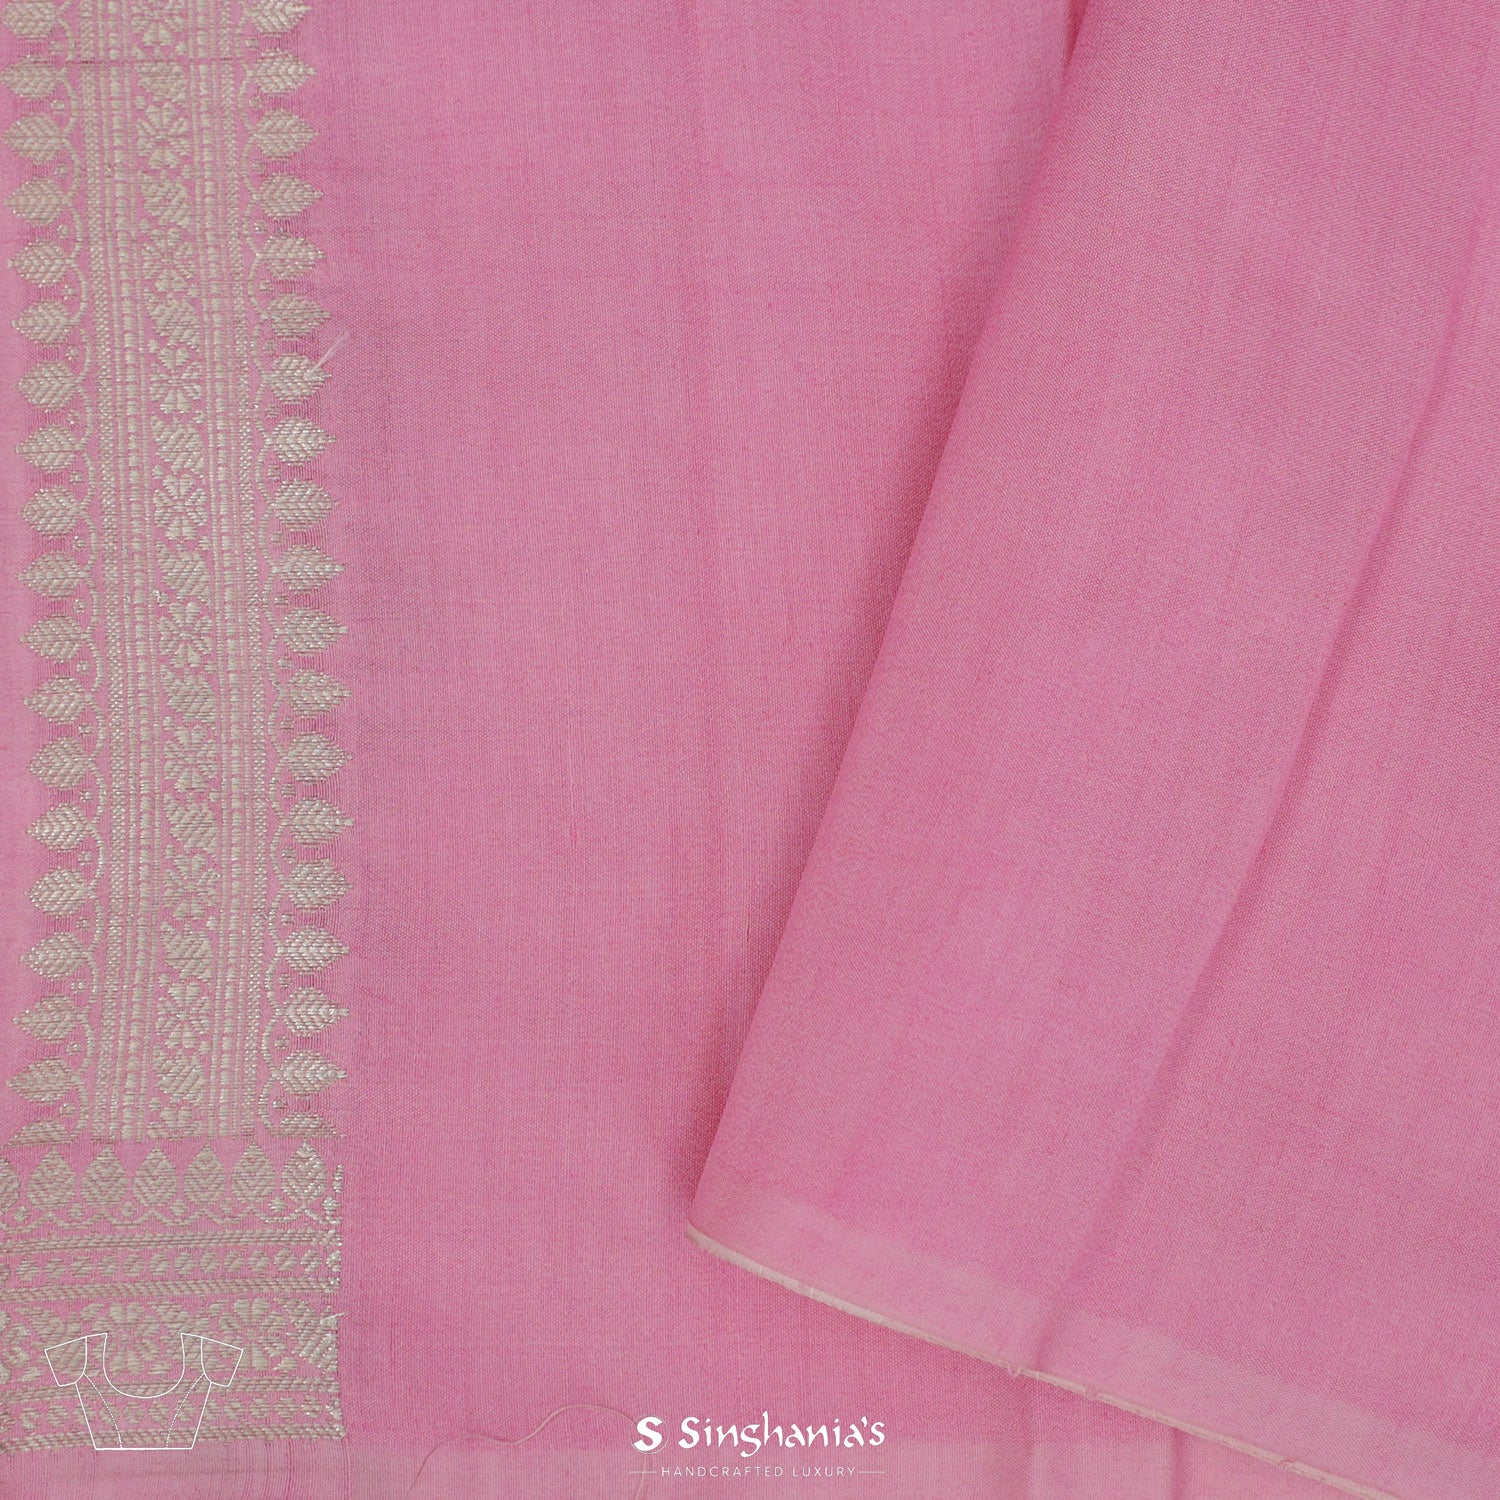 Multi-Pink Organza Saree With Banarasi Weaving In Floral Motifs